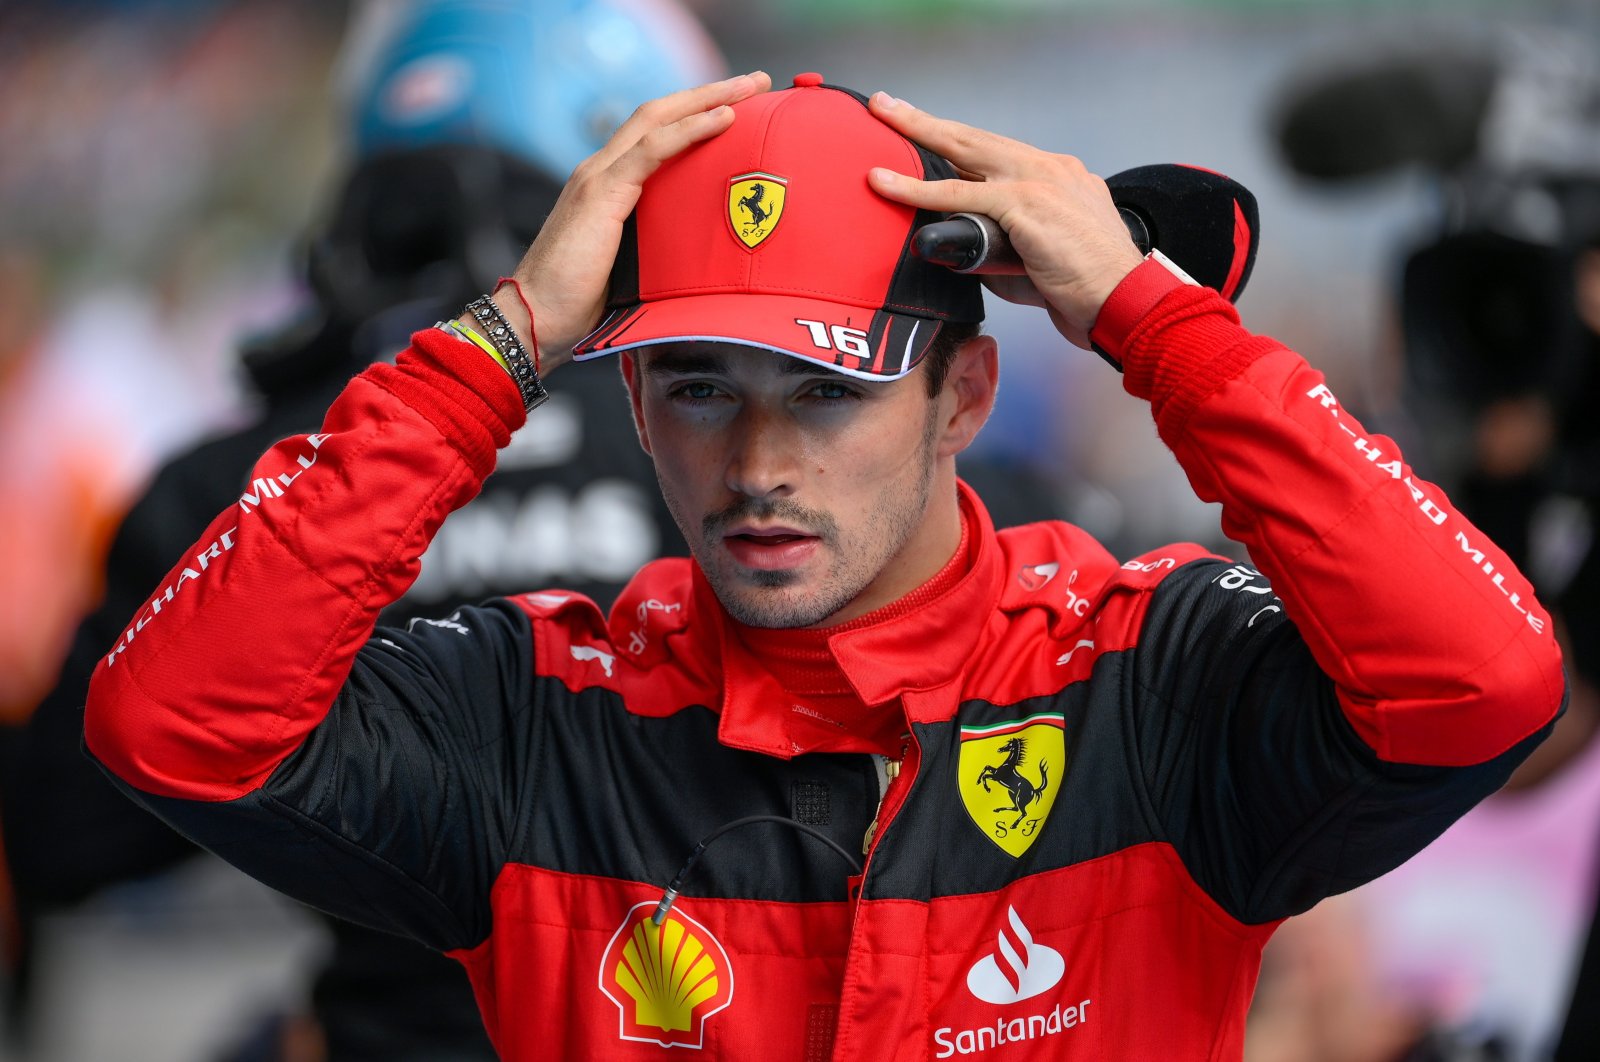 Leclerc menuntut jawaban Ferrari setelah strategi merugikan GP Hungaria